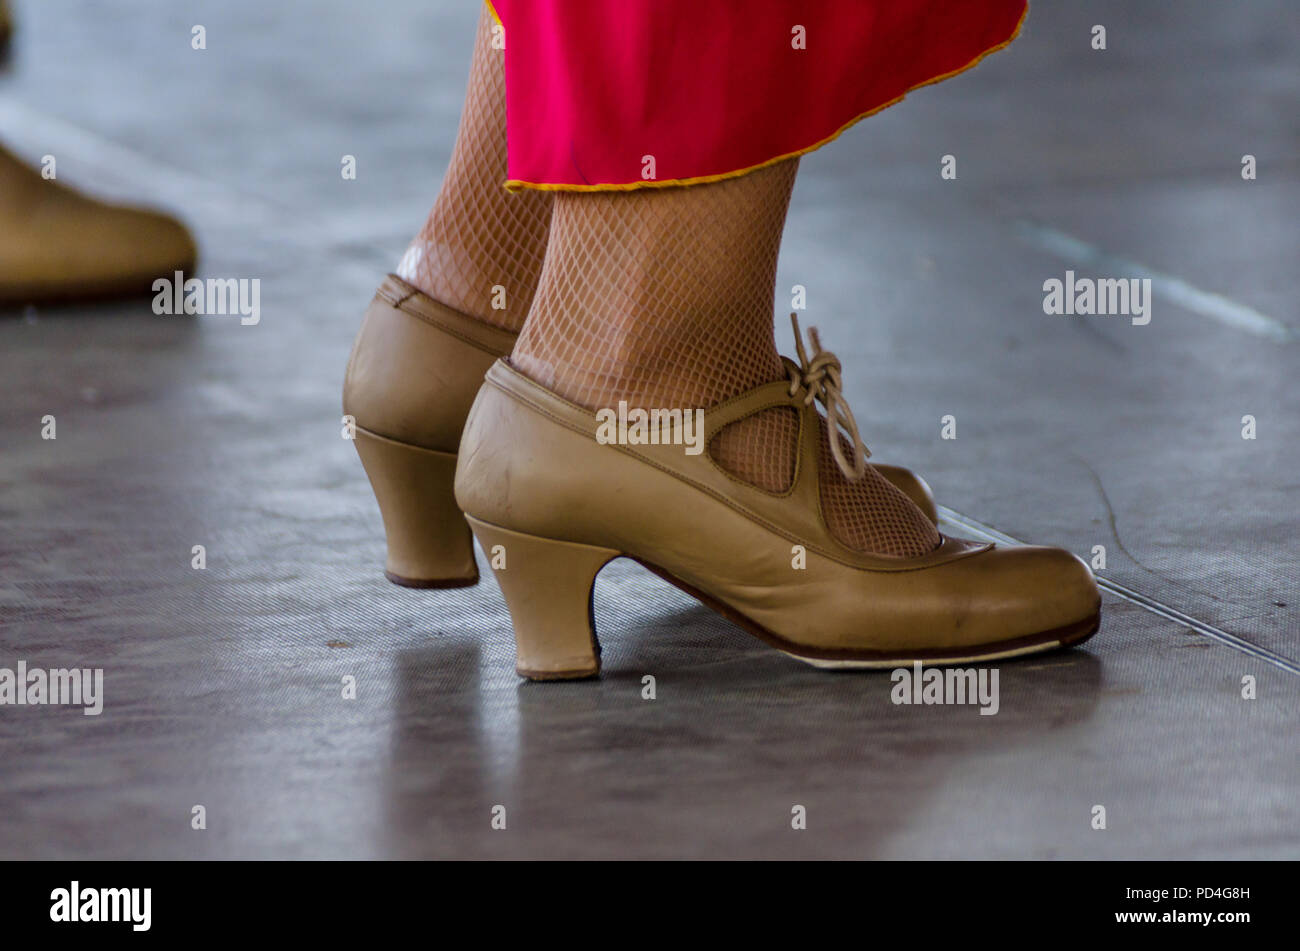 Primer plano de un calzado típico de tradicionales zapatos baile flamenco español, zapatos de tacón alto, parte de la Vestimenta Fotografía de stock - Alamy